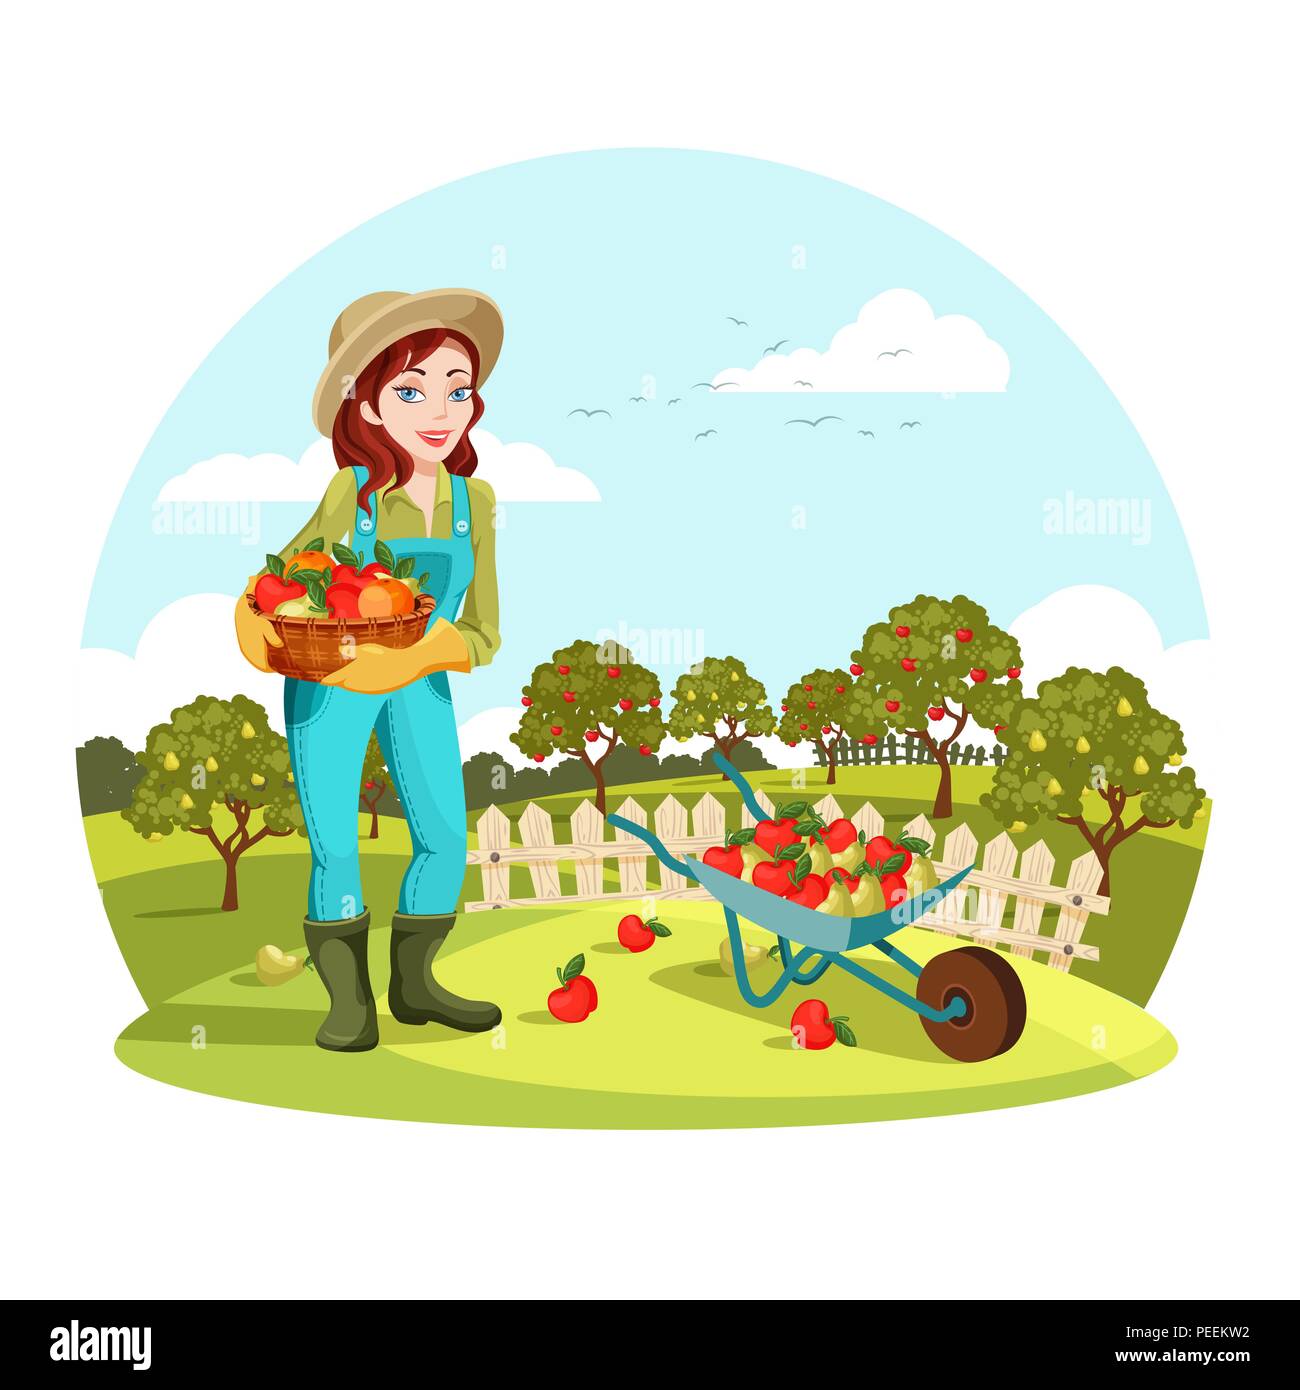 Frau landwirtschaftlichen Gemeinschaften garten Äpfel oder Birnen. Weibliche Landwirt oder Gärtner in der Nähe von Schubkarre mit Früchten. Organisches und gesundes Essen Anbau, natürliche Ernährung und die Landschaft Thema Stock Vektor